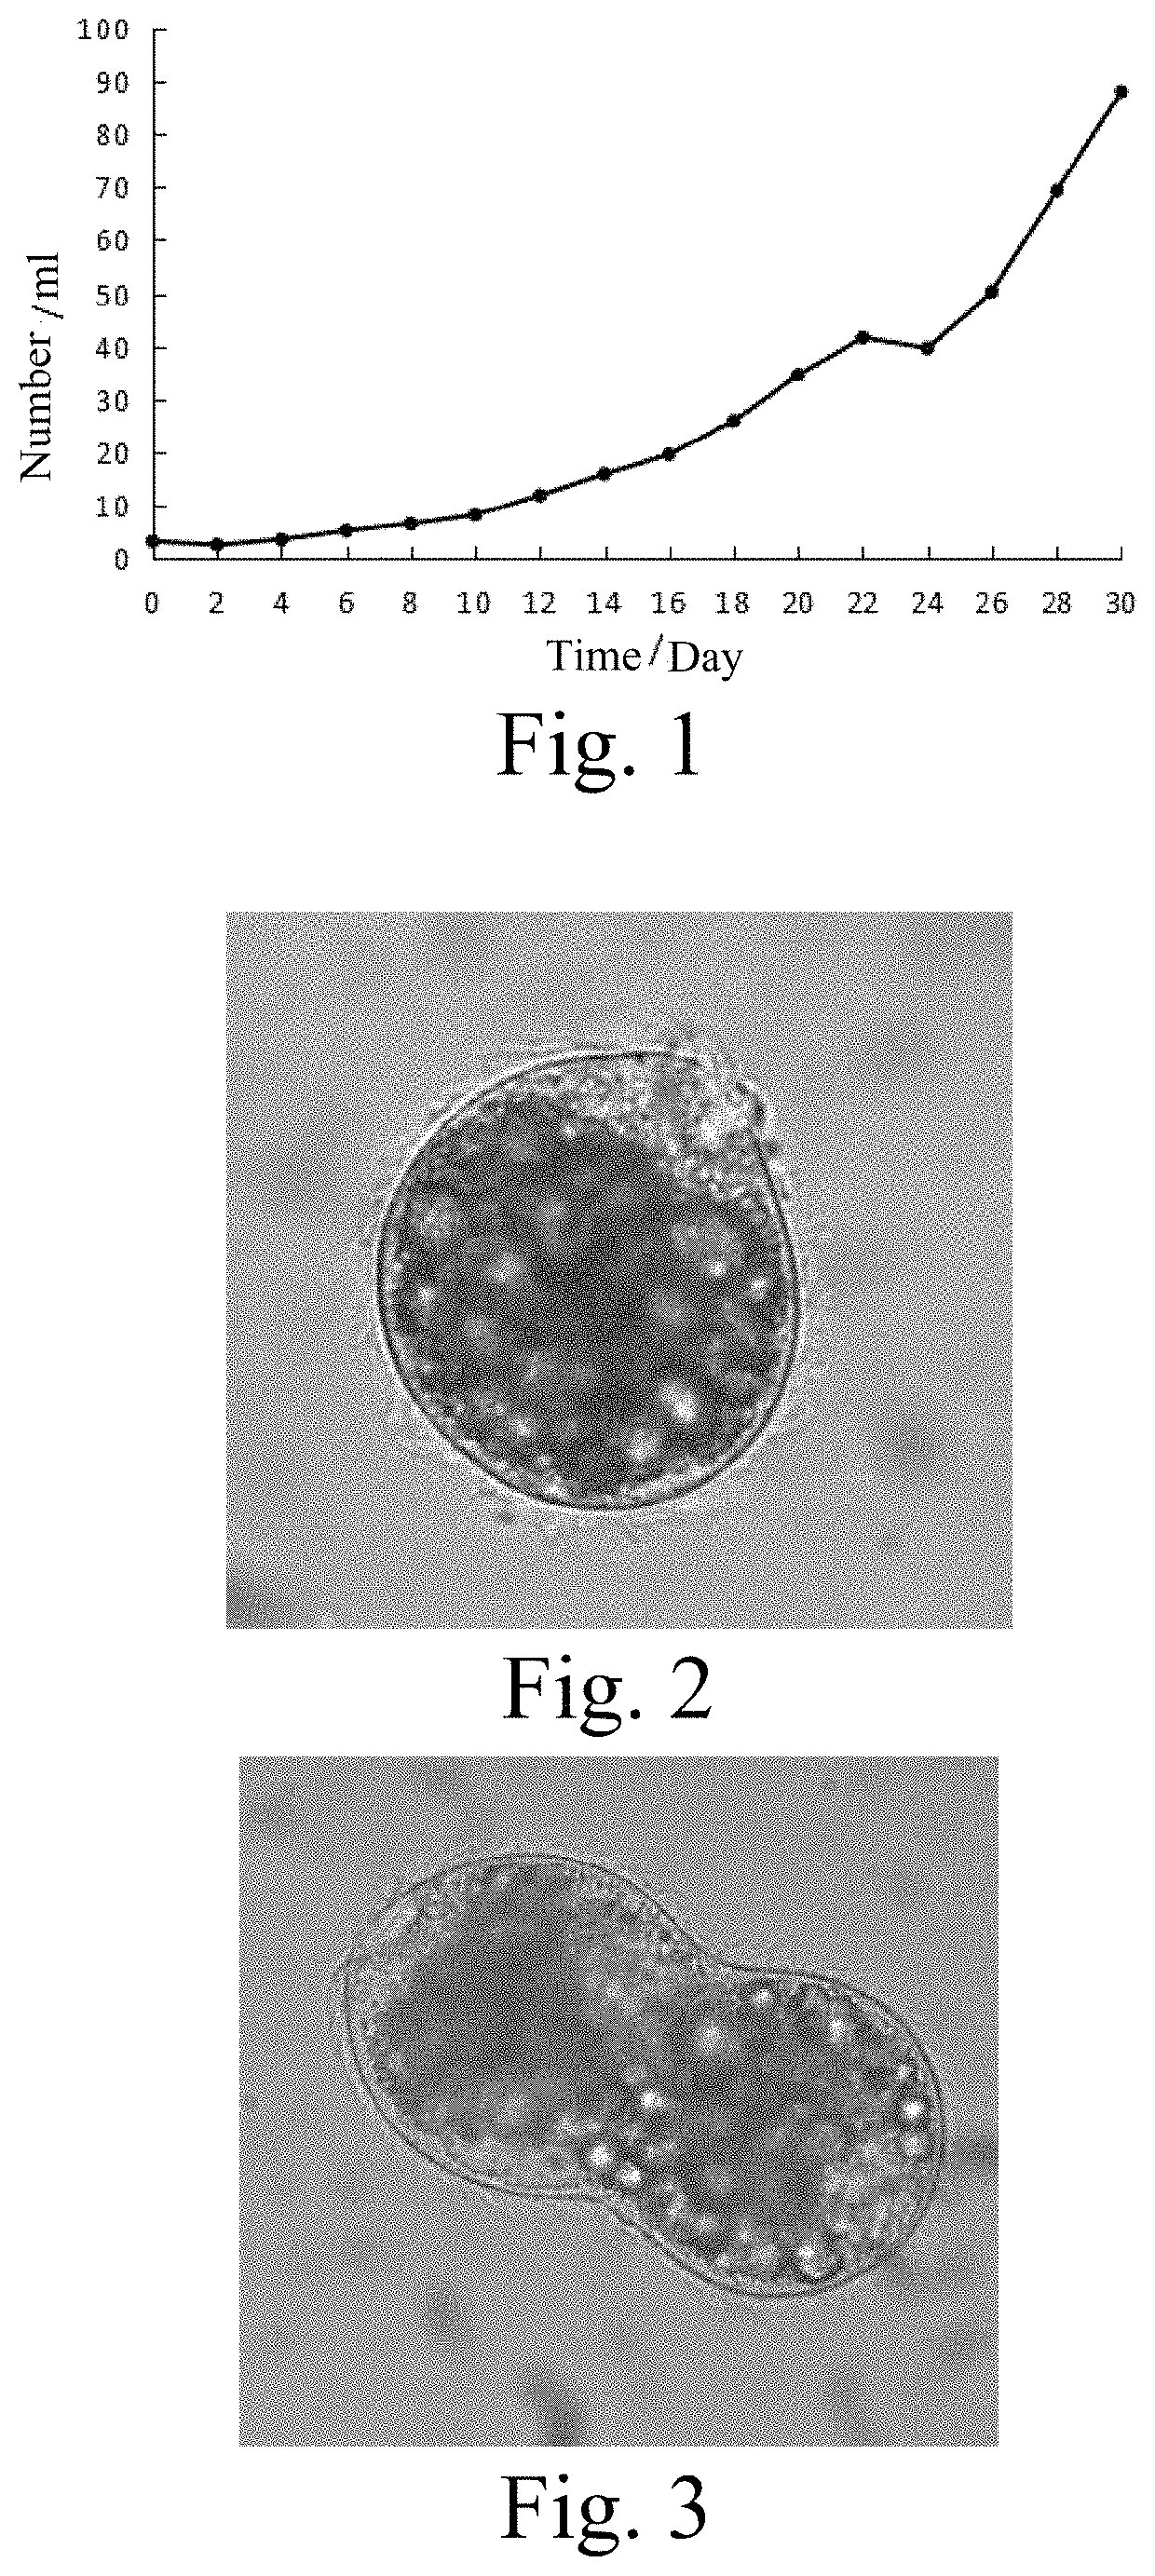 Medium for culturing Balantidium ctenopharyngodoni in vitro, method for preparing the medium and method for culturing Balantidium ctenopharyngodoni in vitro